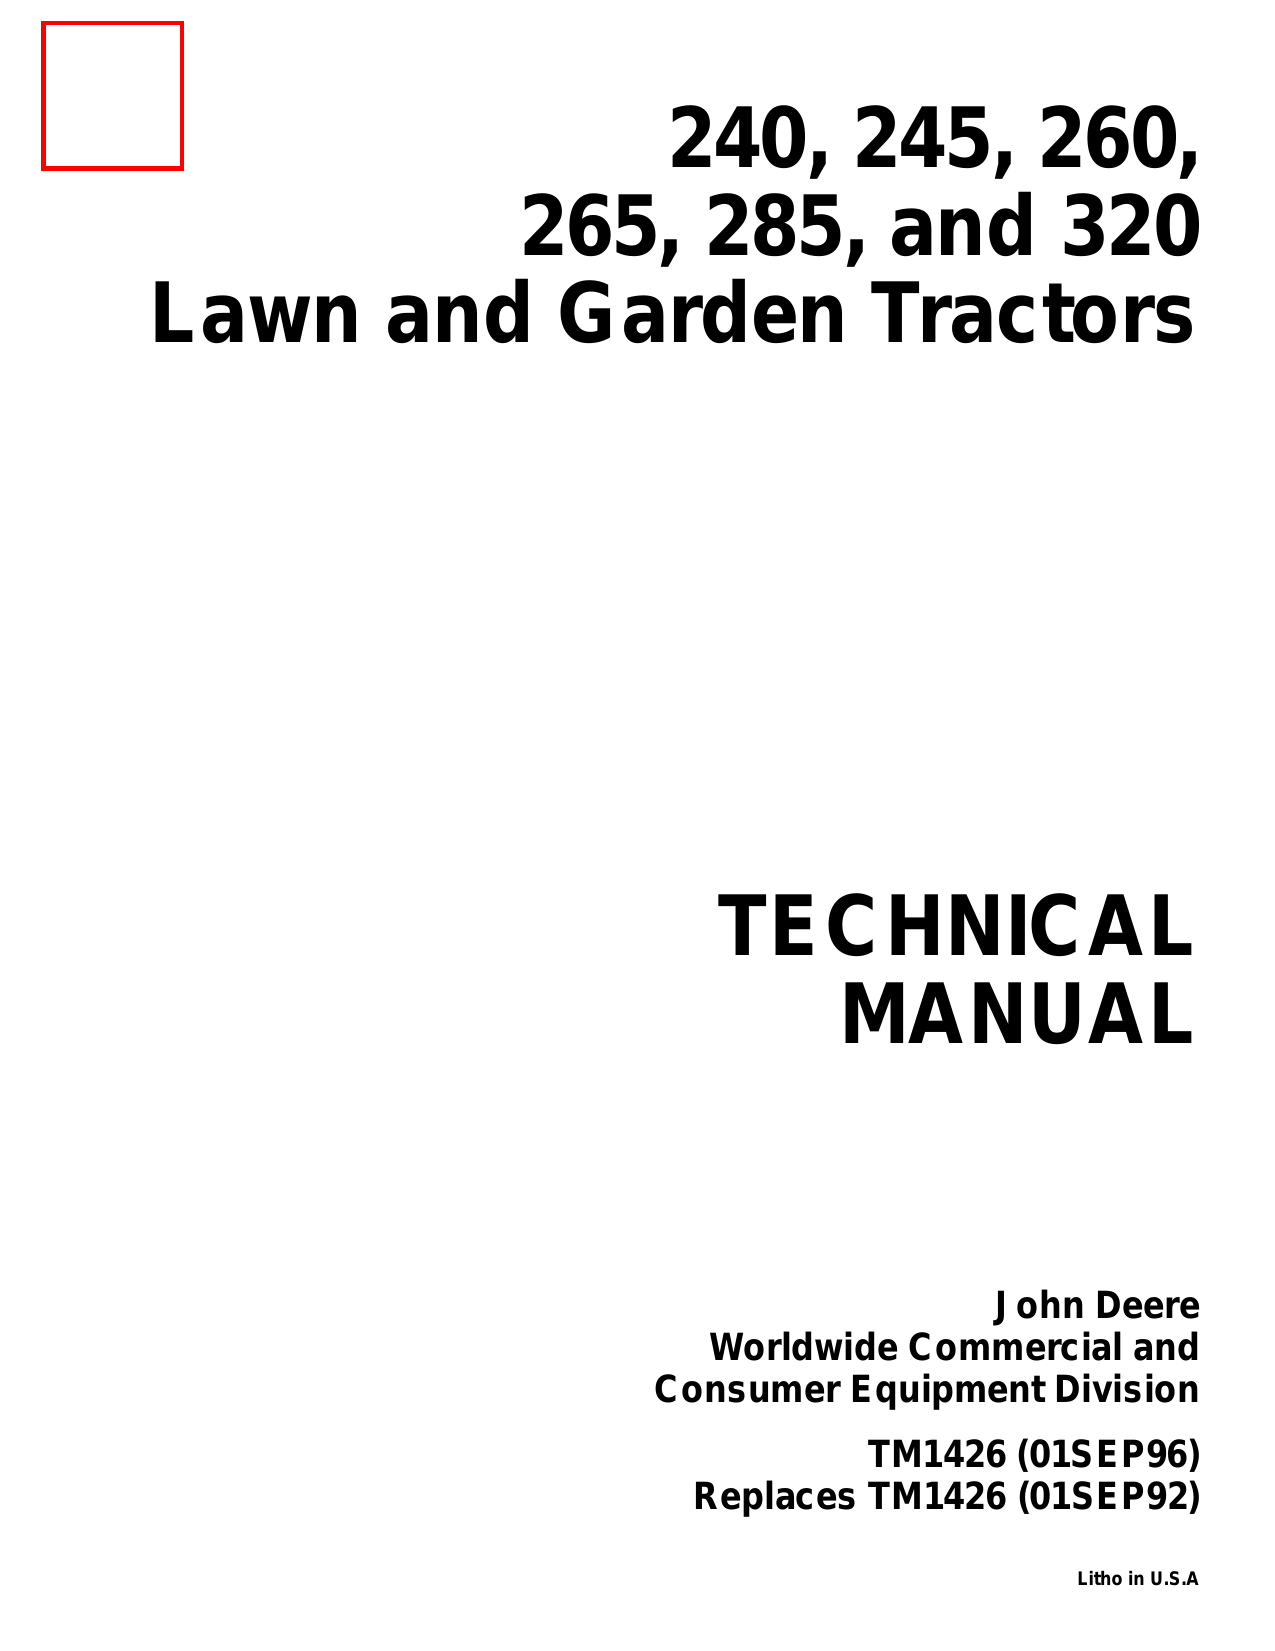 John Deere 240, 245, 260, 265, 285, 320 garden tractor repair manual - TM-1426 Preview image 1